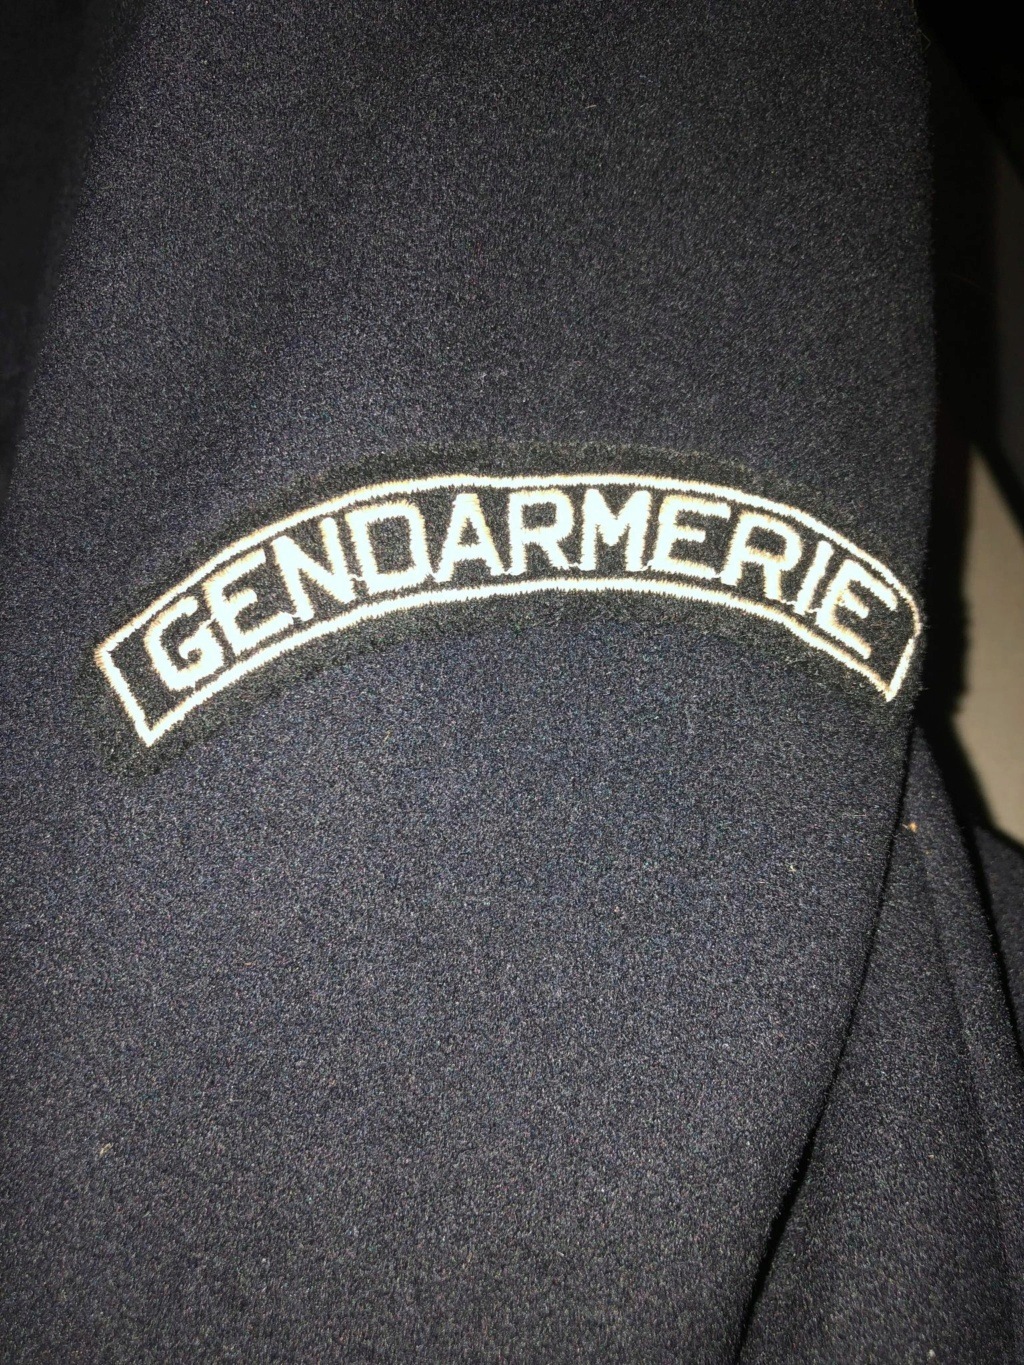 Une curiosité ! Manteau Allemand Gendarmerie Française 30505410